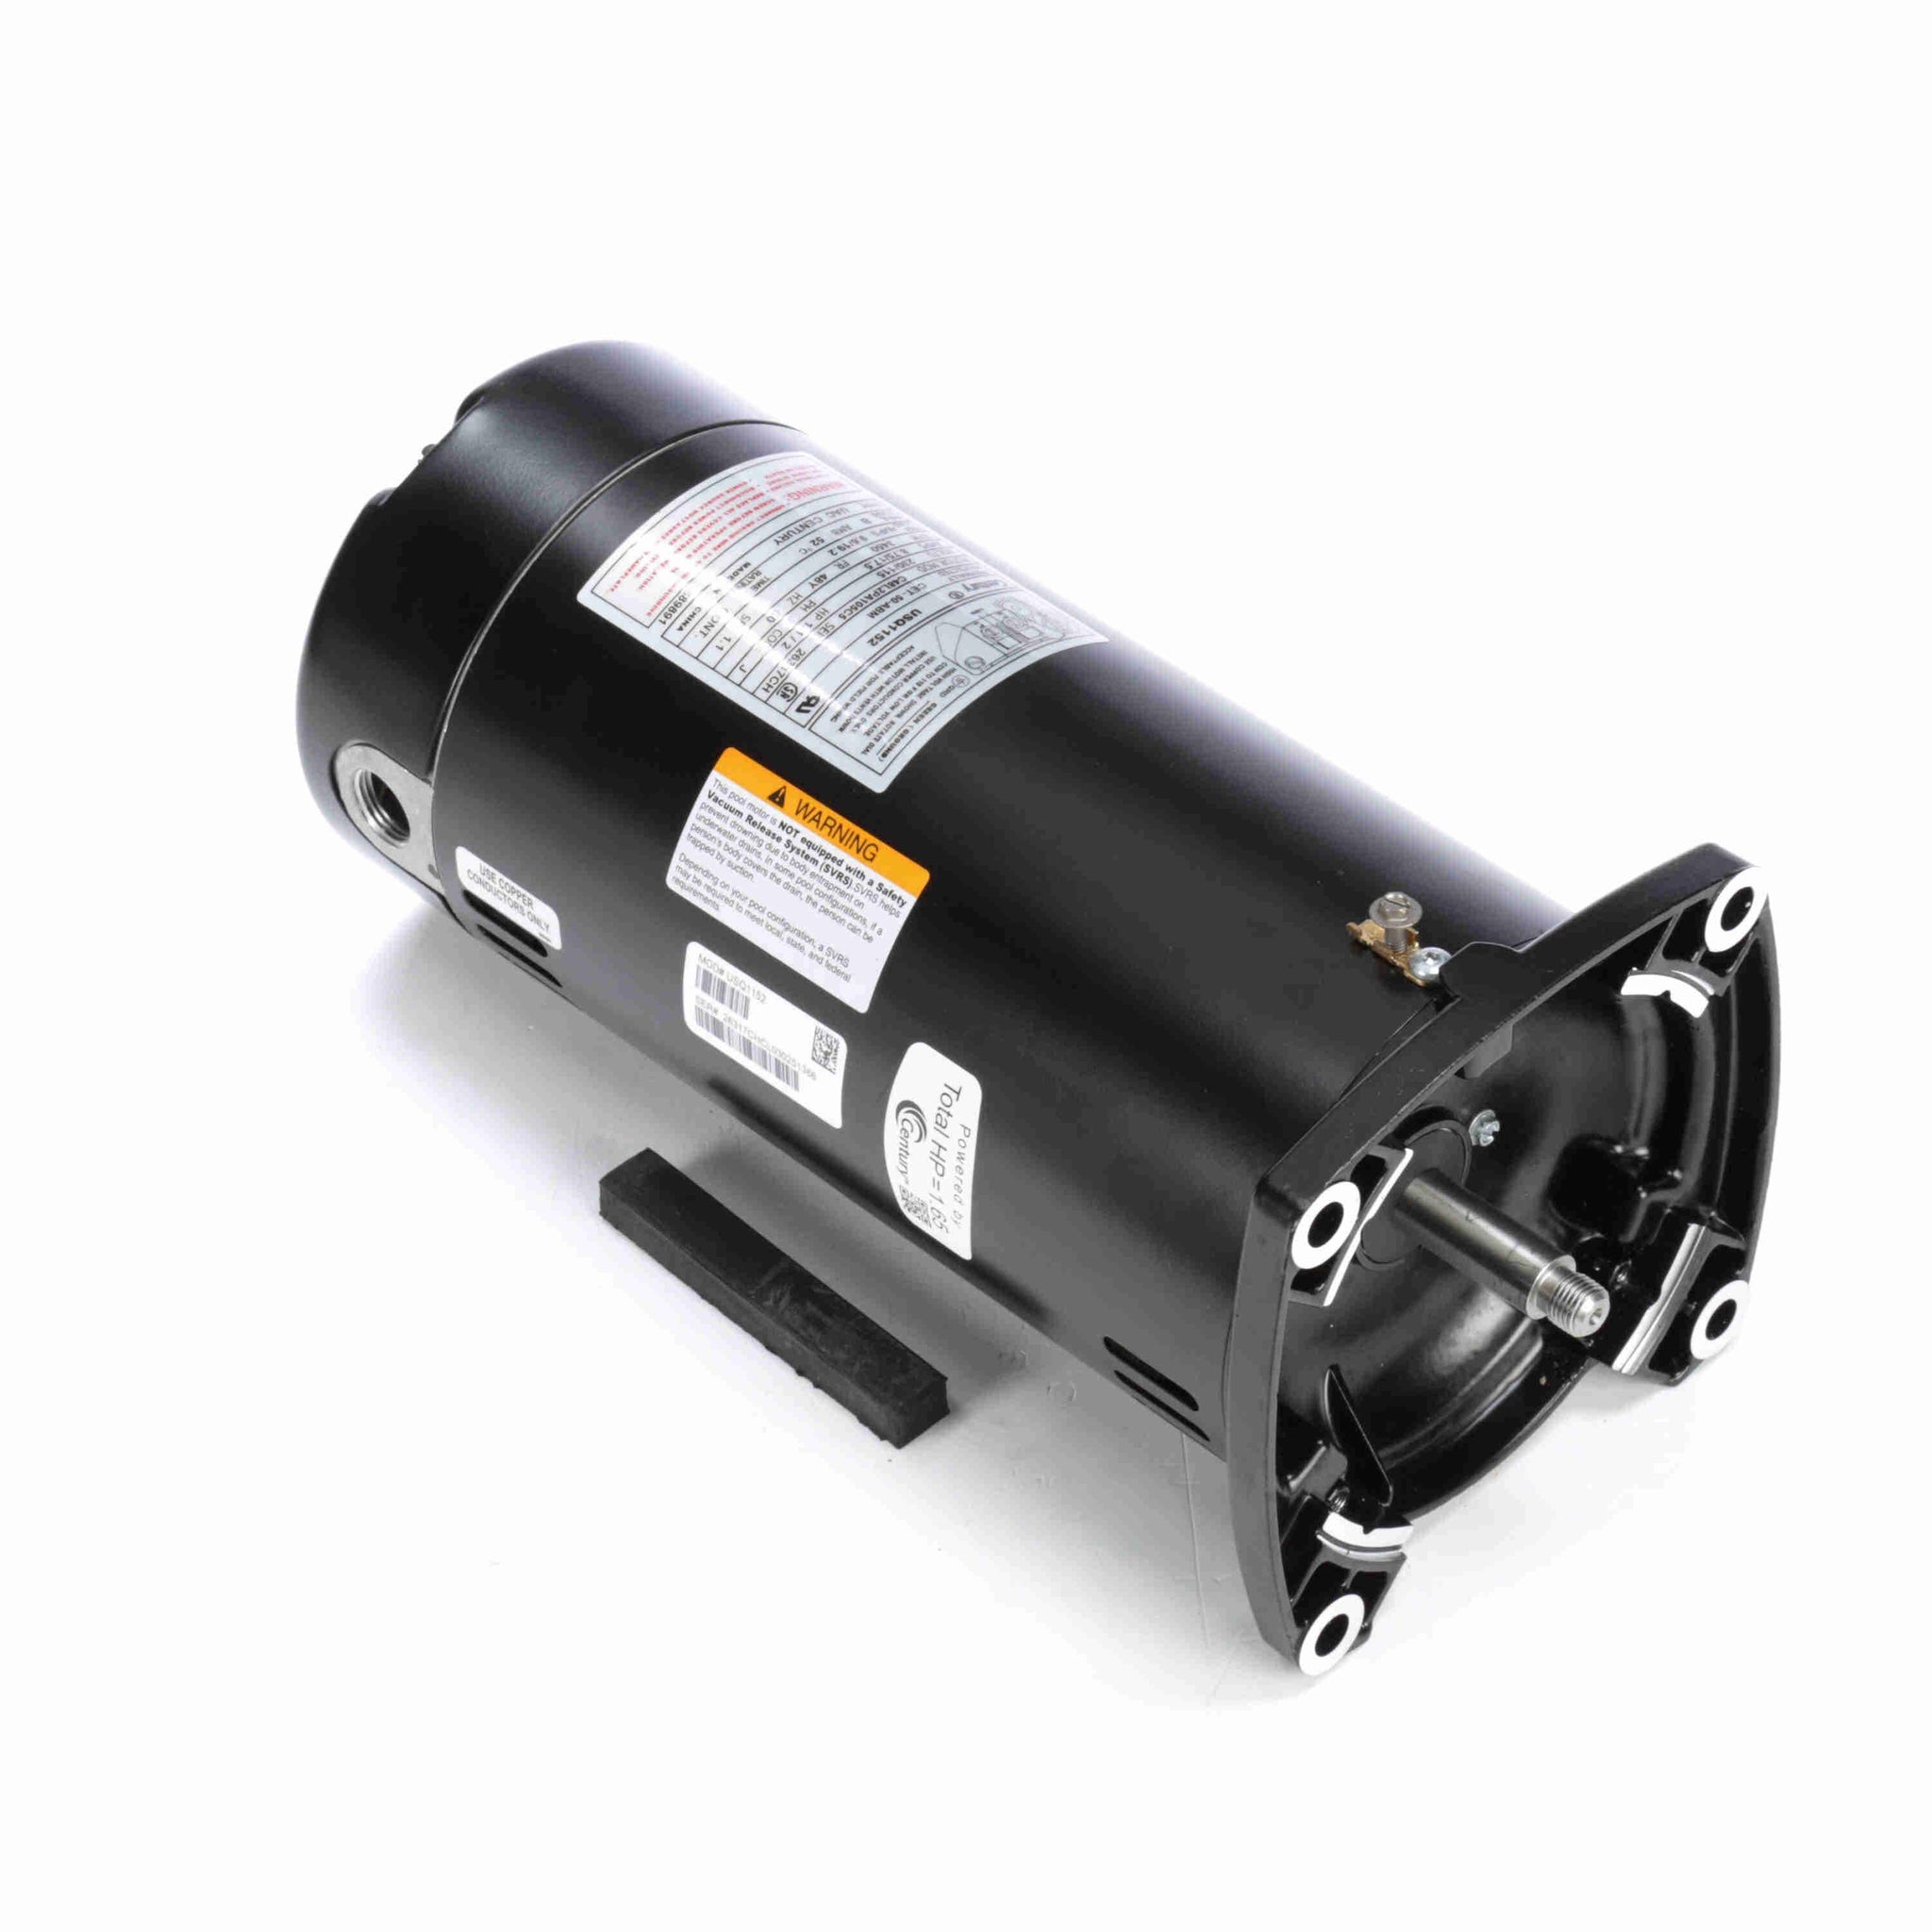 USQ1152 - 1 1/2 HP Pool Pump Motor, 1 phase, 3600 RPM, 230/115 V, 48Y Frame, ODP - Hardware & Moreee